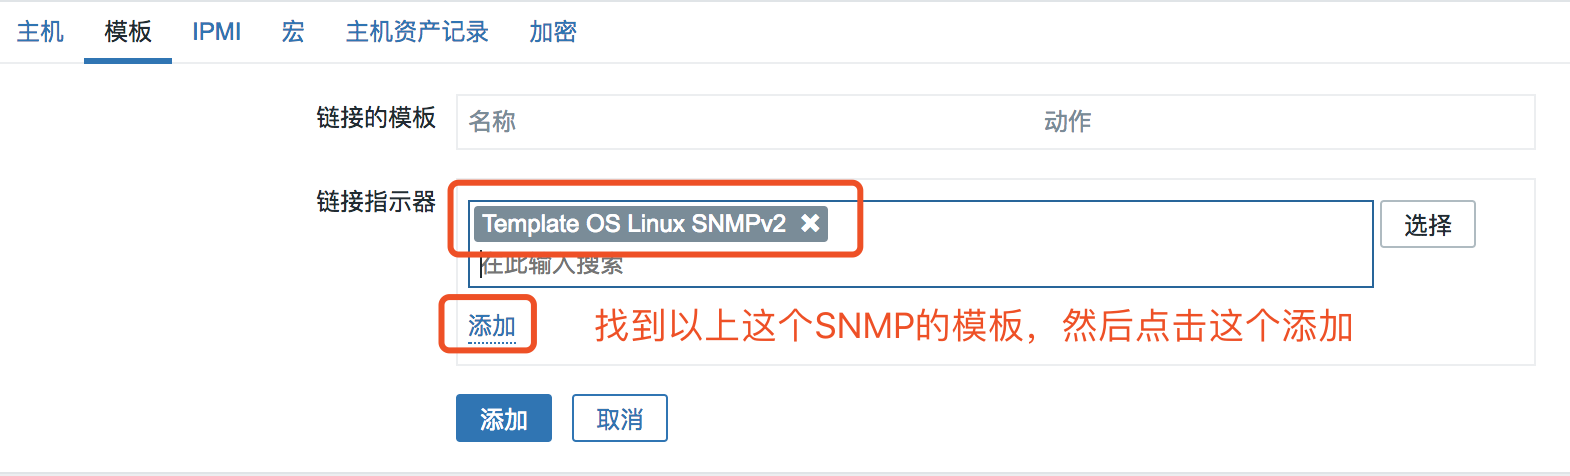 04-Zabbix使用SNMP监控